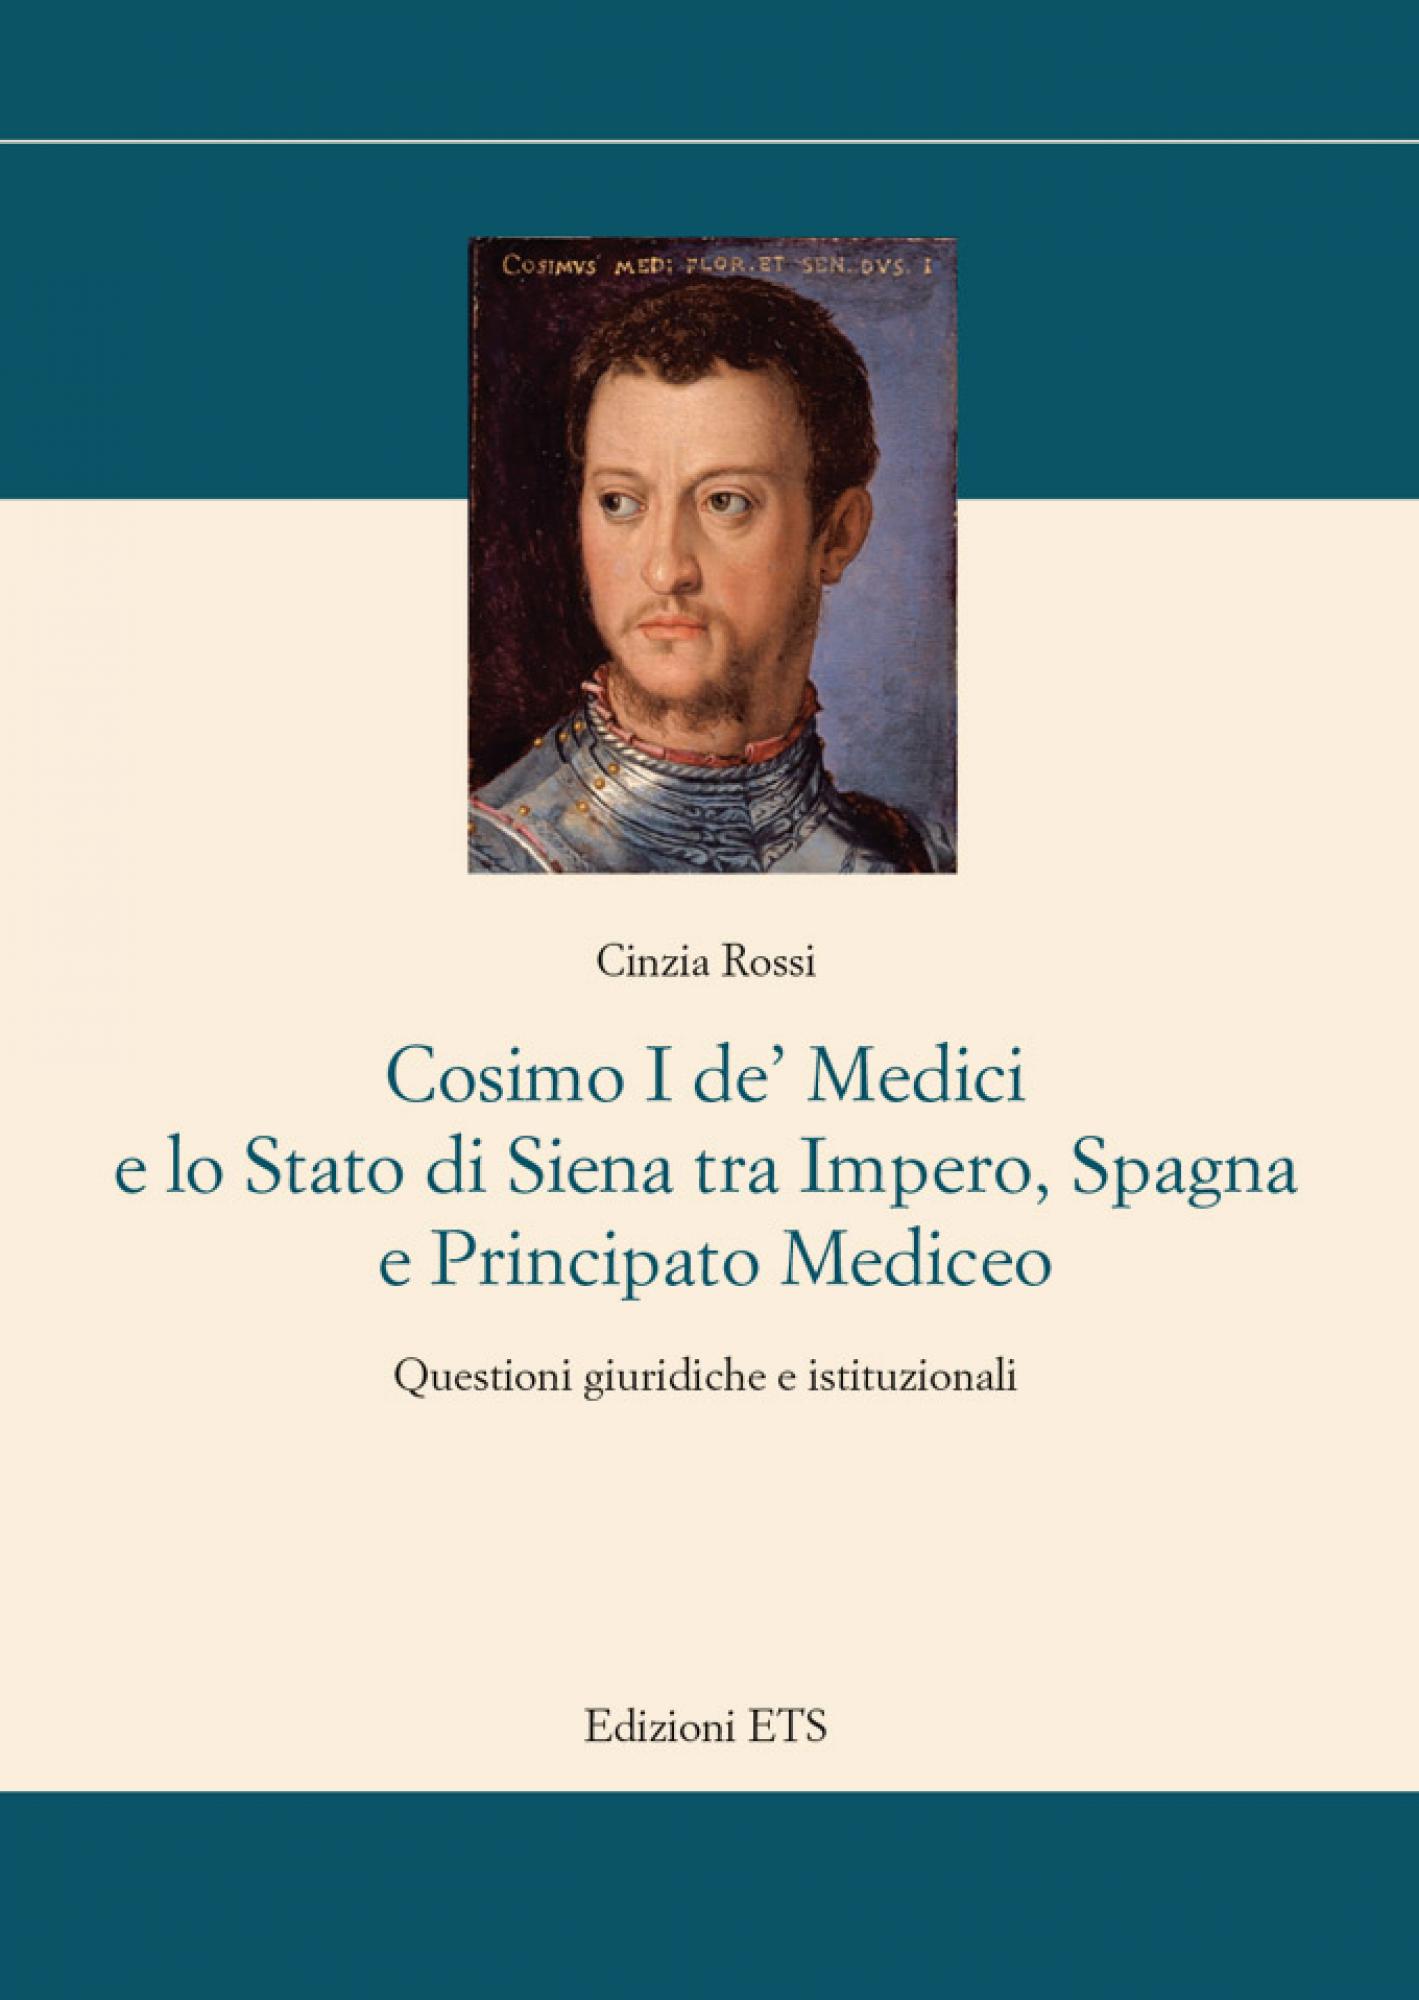 Cosimo I de’ Medici e lo Stato di Siena tra Impero, Spagna e Principato Mediceo.Questioni giuridiche e istituzionali